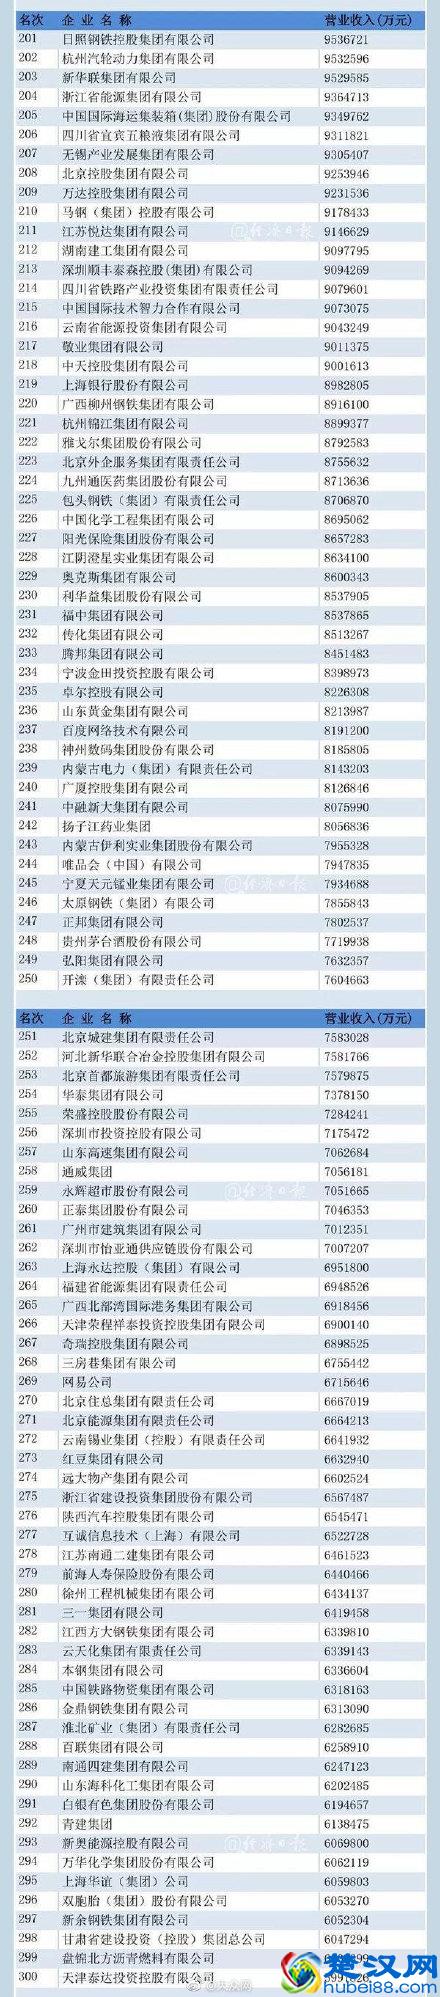 中国五百强企业名单公布(2019中国企业排名)_楚汉网-湖北门户